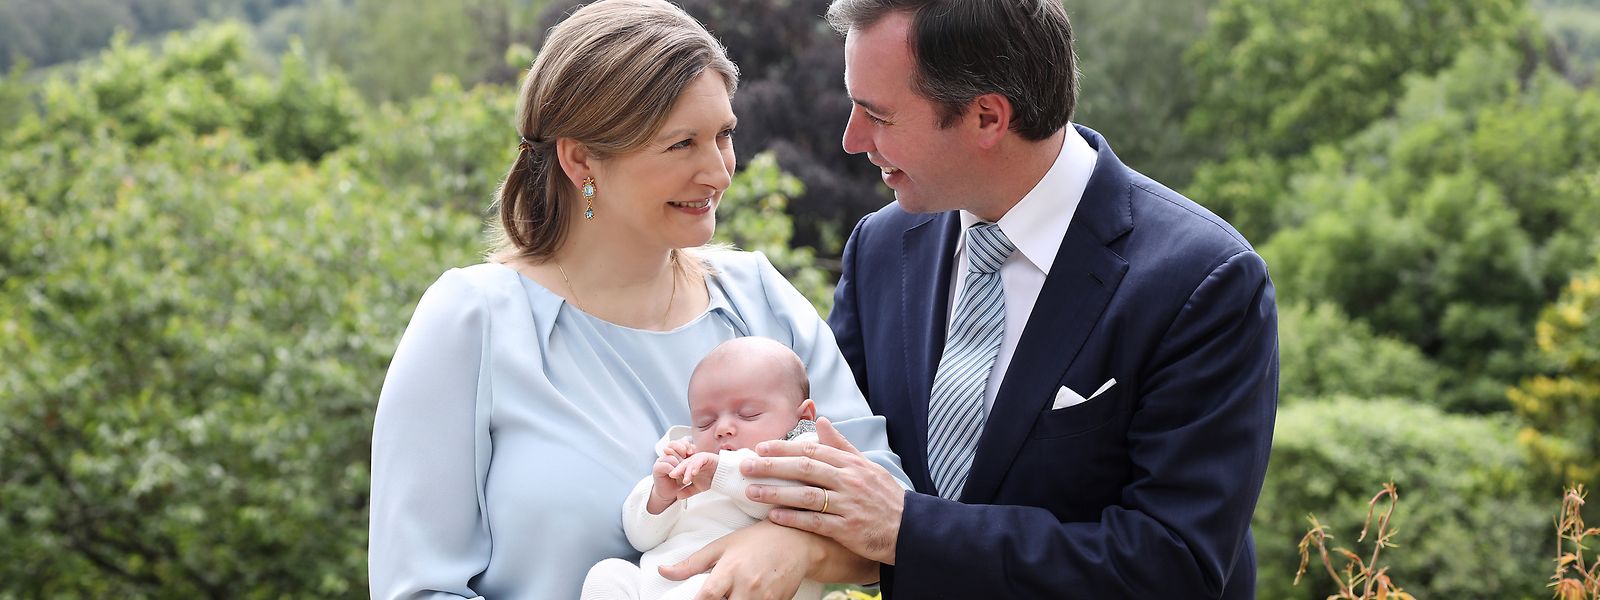 Né le 10 mai 2020, Charles Jean Philippe Joseph Marie Guillaume de Luxembourg est le fils du grand-duc héritier Guillaume et de la grande-duchesse héritière Stéphanie.